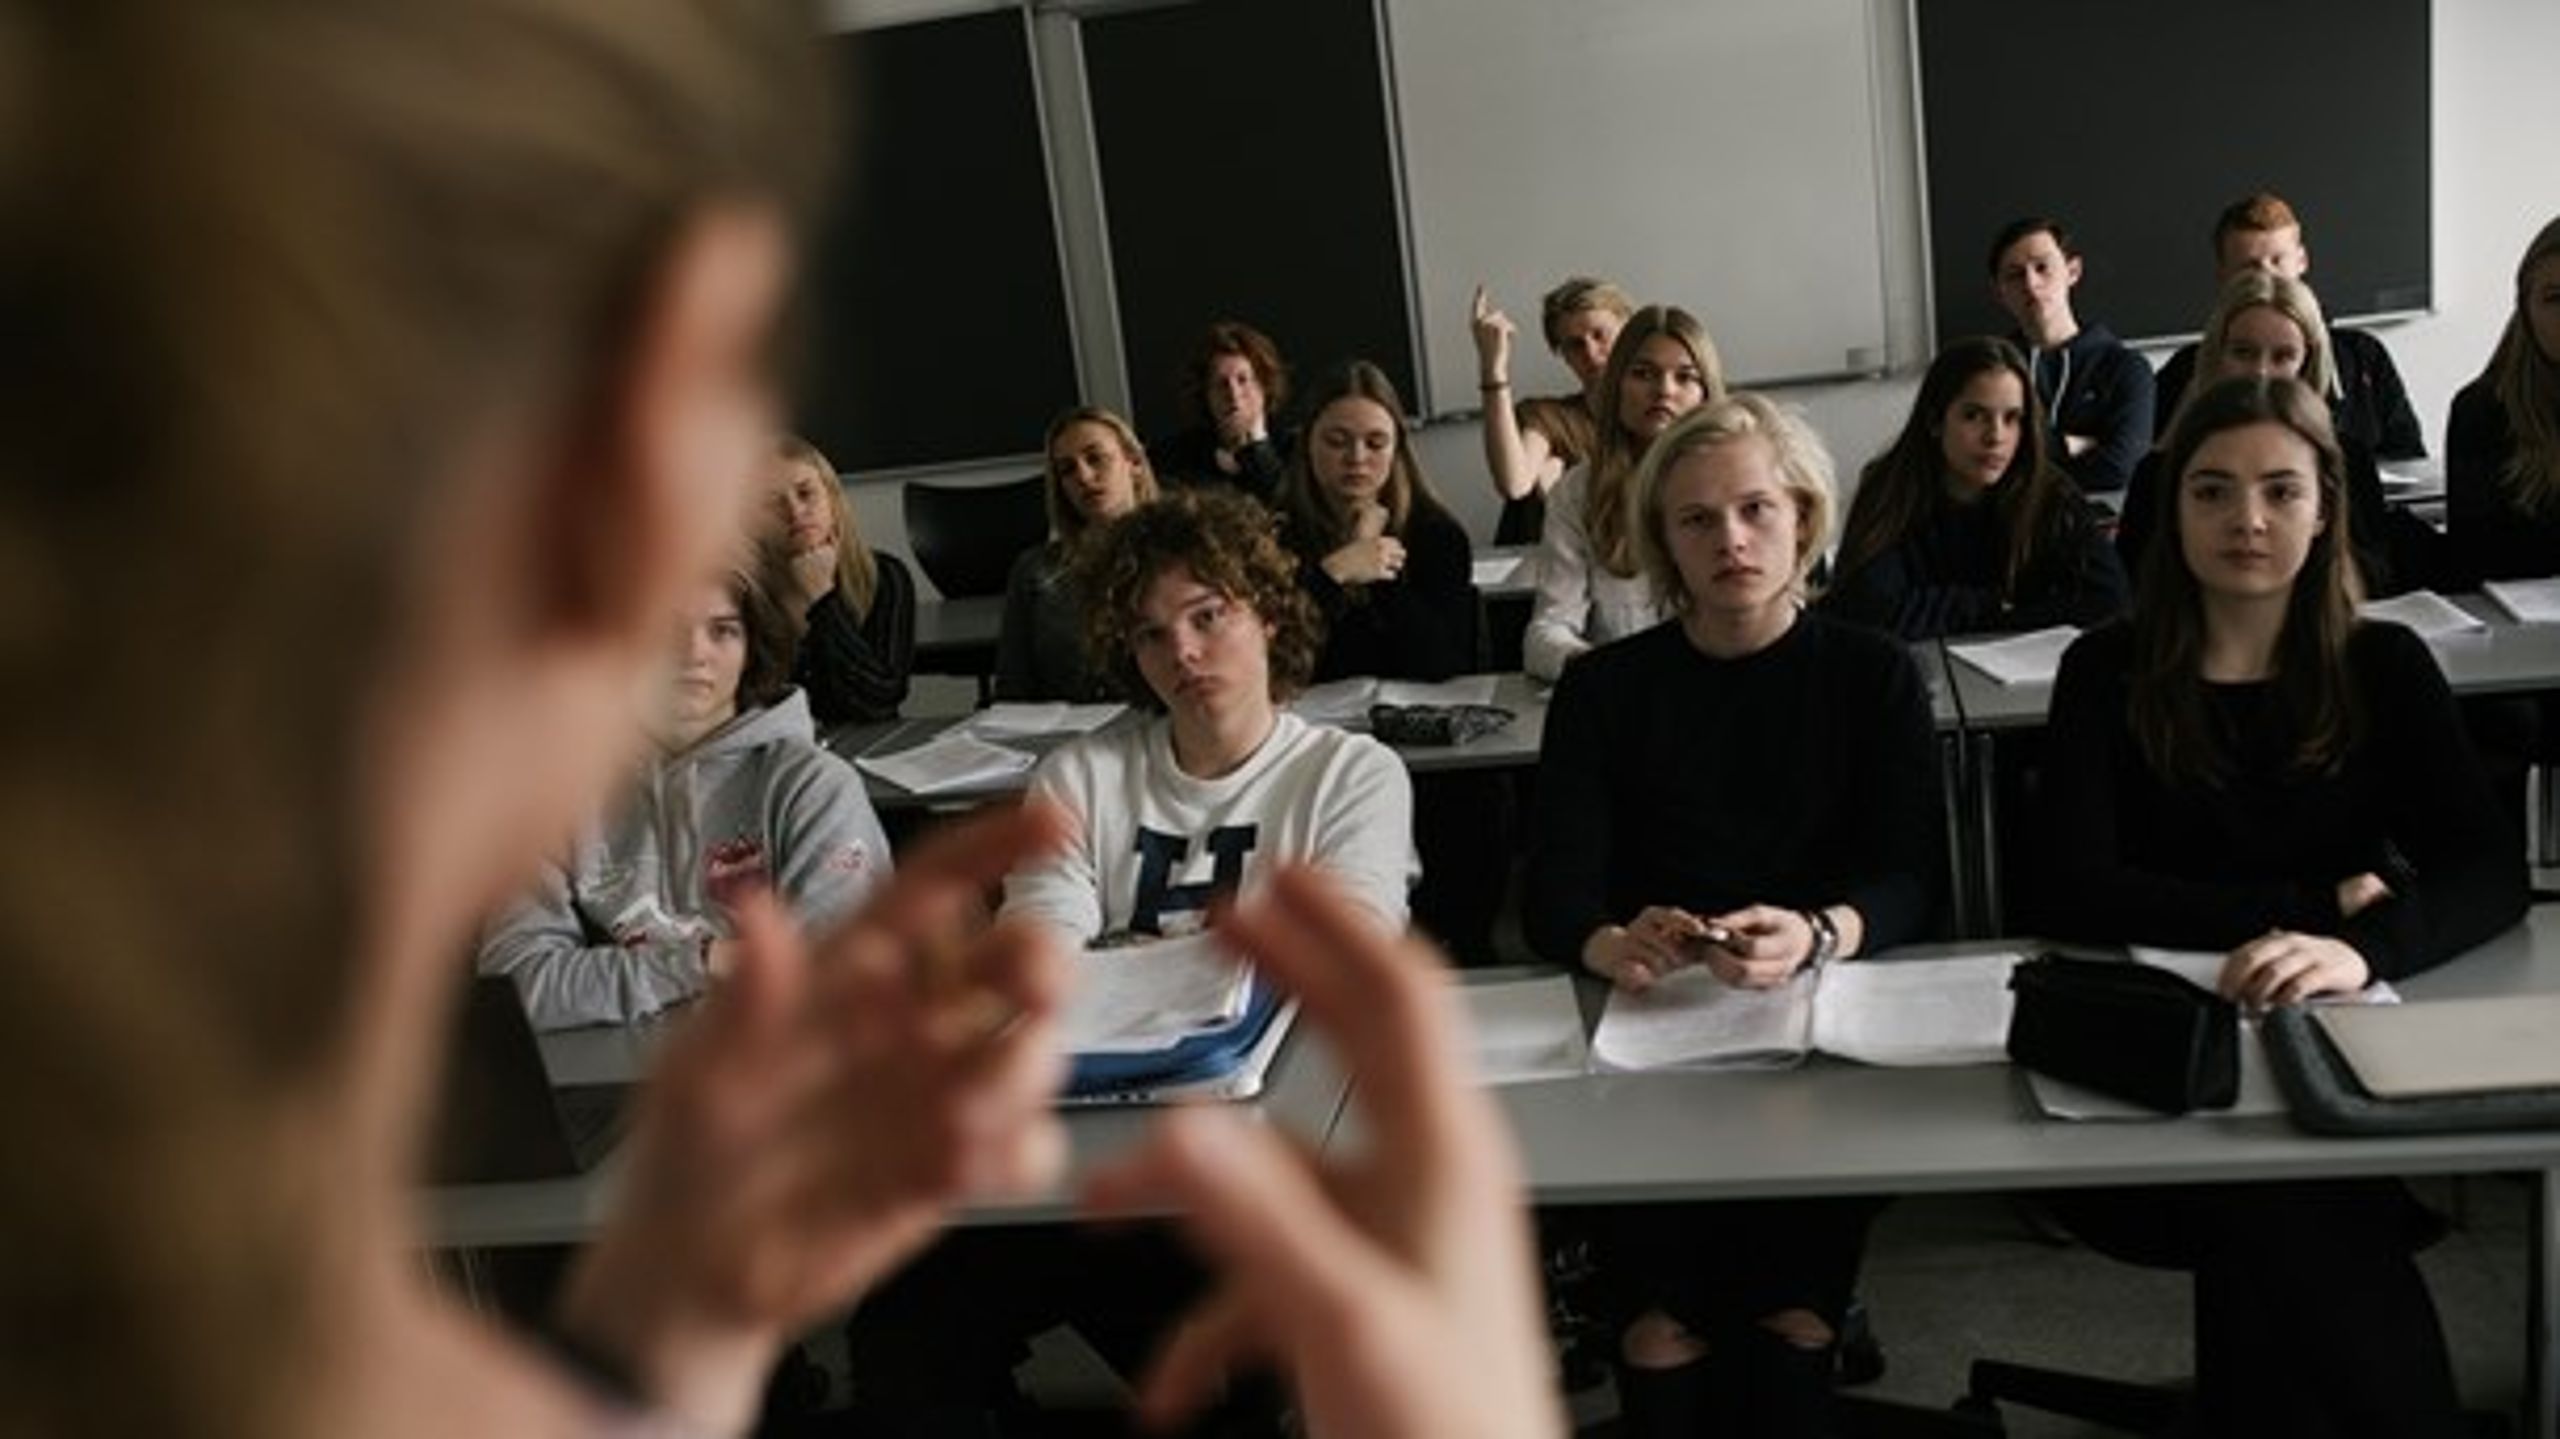 Flere steder i Danmark er der gymnasier med en uforholdsmæssig høj andel tosprogede elever.&nbsp;Det er et samfundsmæssigt problem, som det ikke er rimeligt at bede institutionerne om at løse på egen hånd, skriver Danske Regioner.